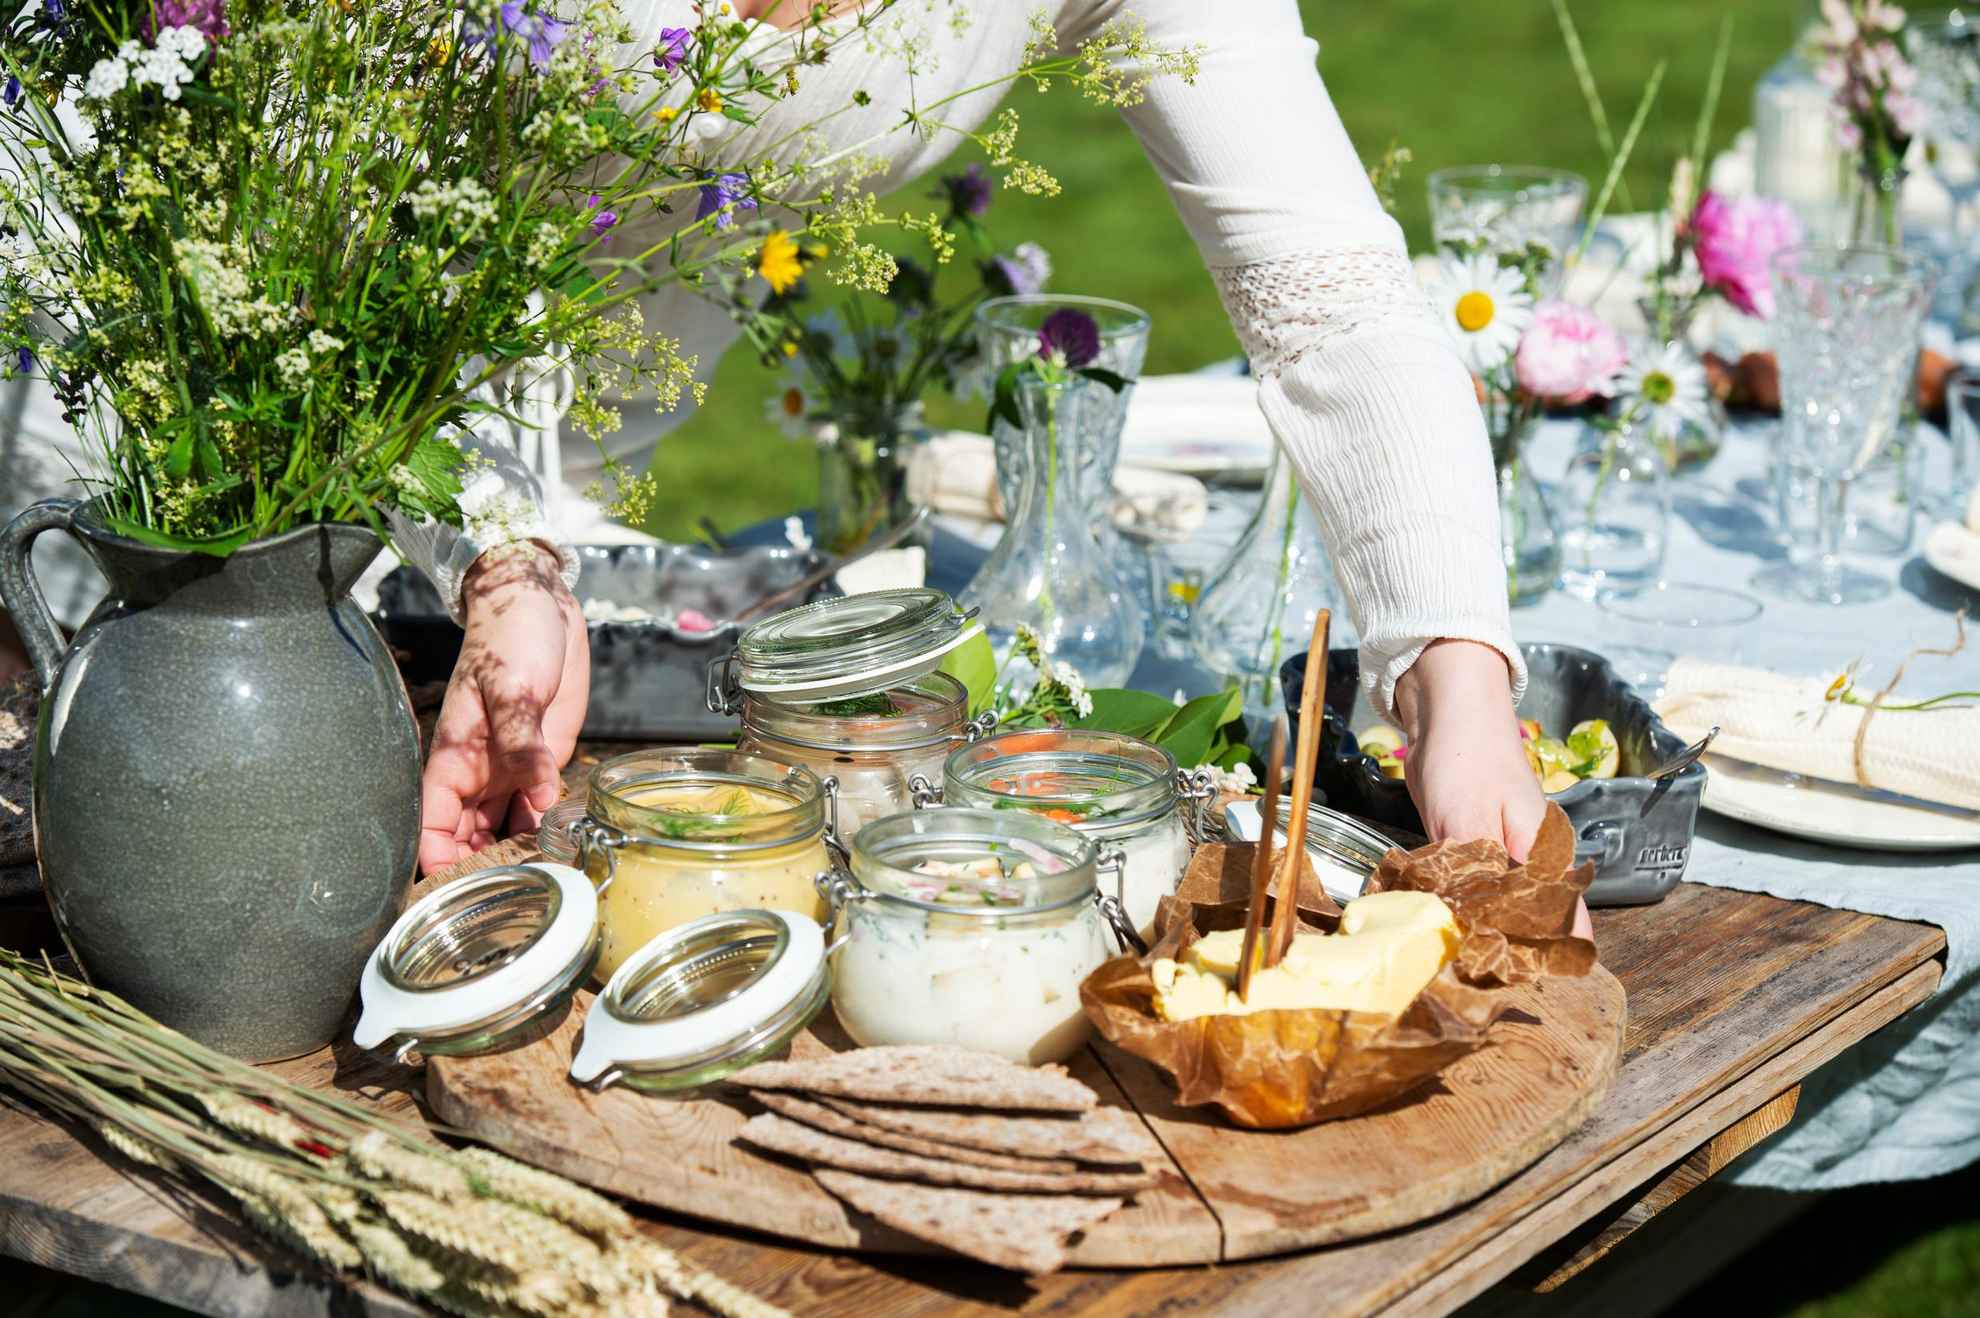 Eine Frau stellt ein Tablett mit eingelegtem Hering, Butter und Brot auf einen für das Mittsommeressen gedeckten Tisch. Neben dem Tablett steht eine Vase mit Wildblumen.